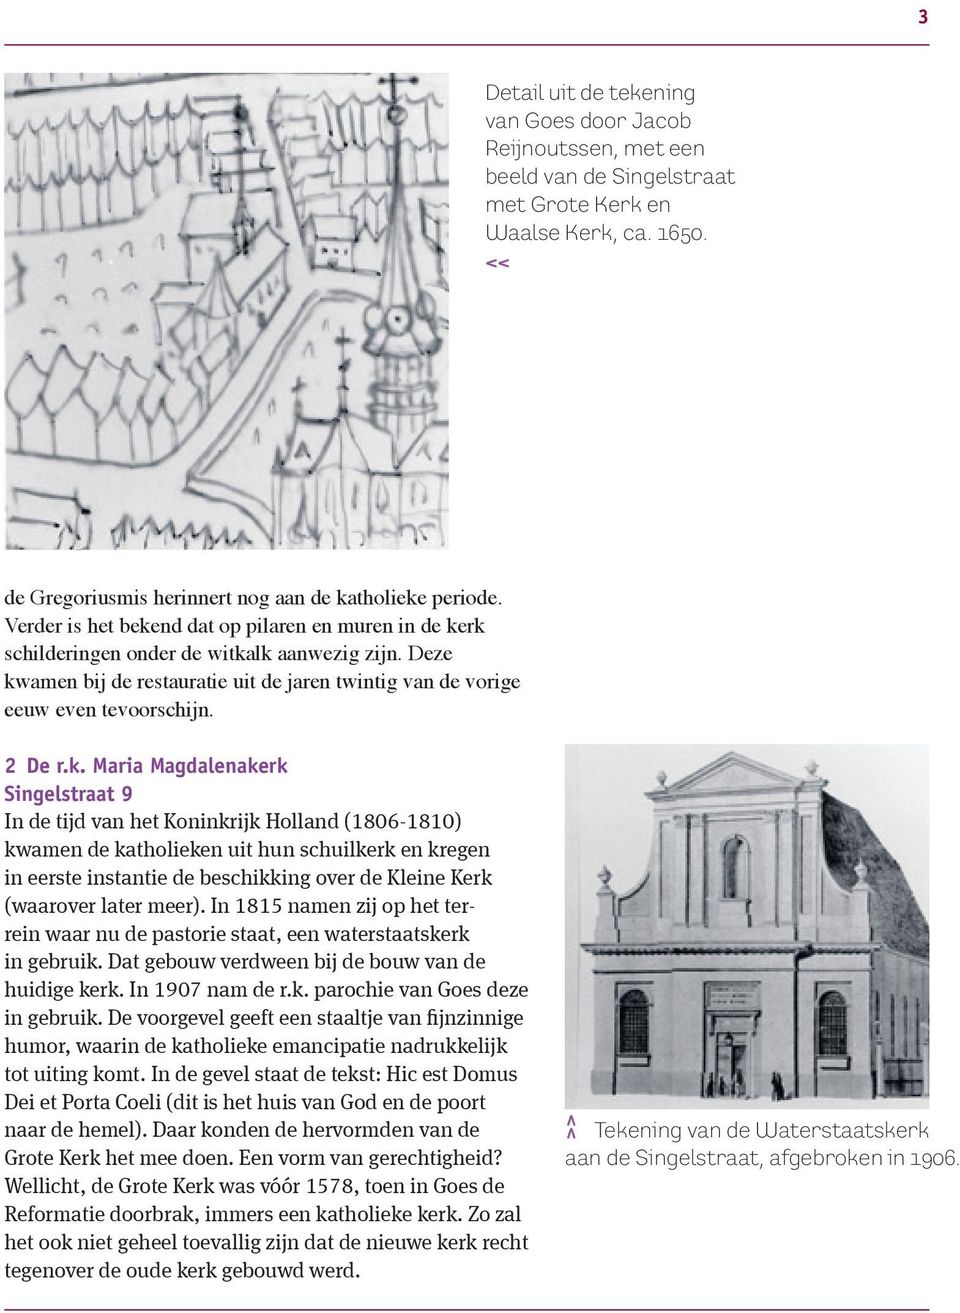 k. Maria Magdalenakerk Singelstraat 9 In de tijd van het Koninkrijk Holland (1806-1810) kwamen de katholieken uit hun schuilkerk en kregen in eerste instantie de beschikking over de Kleine Kerk